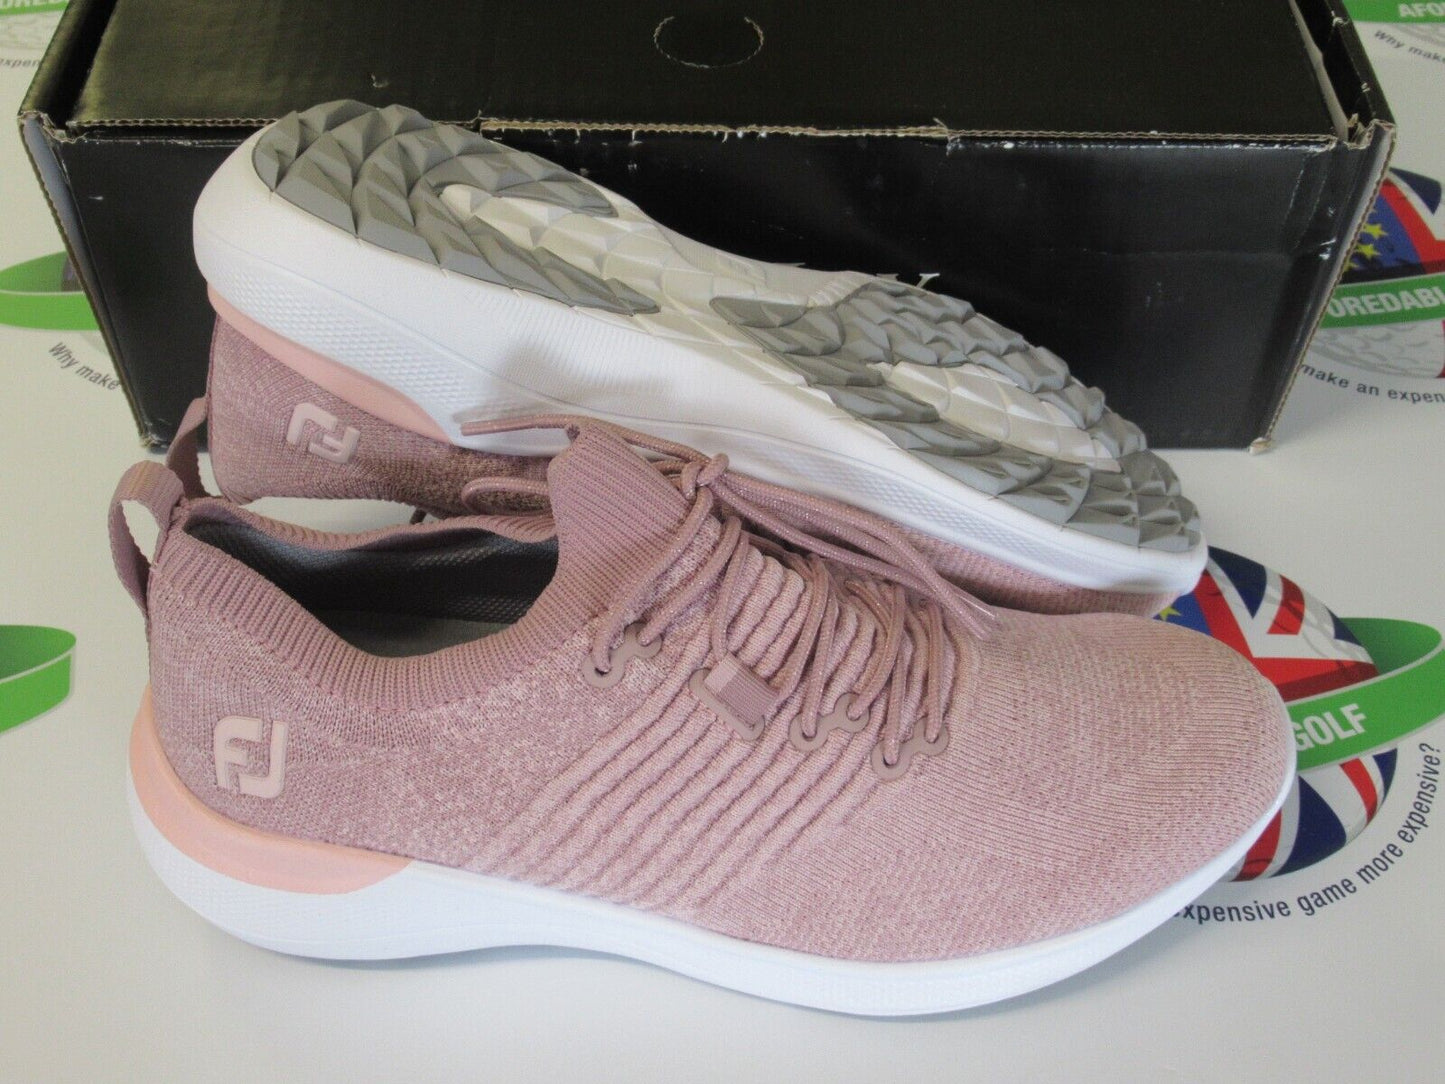 footjoy flex xp womens golf shoes pink heather 95335k uk size 4 medium